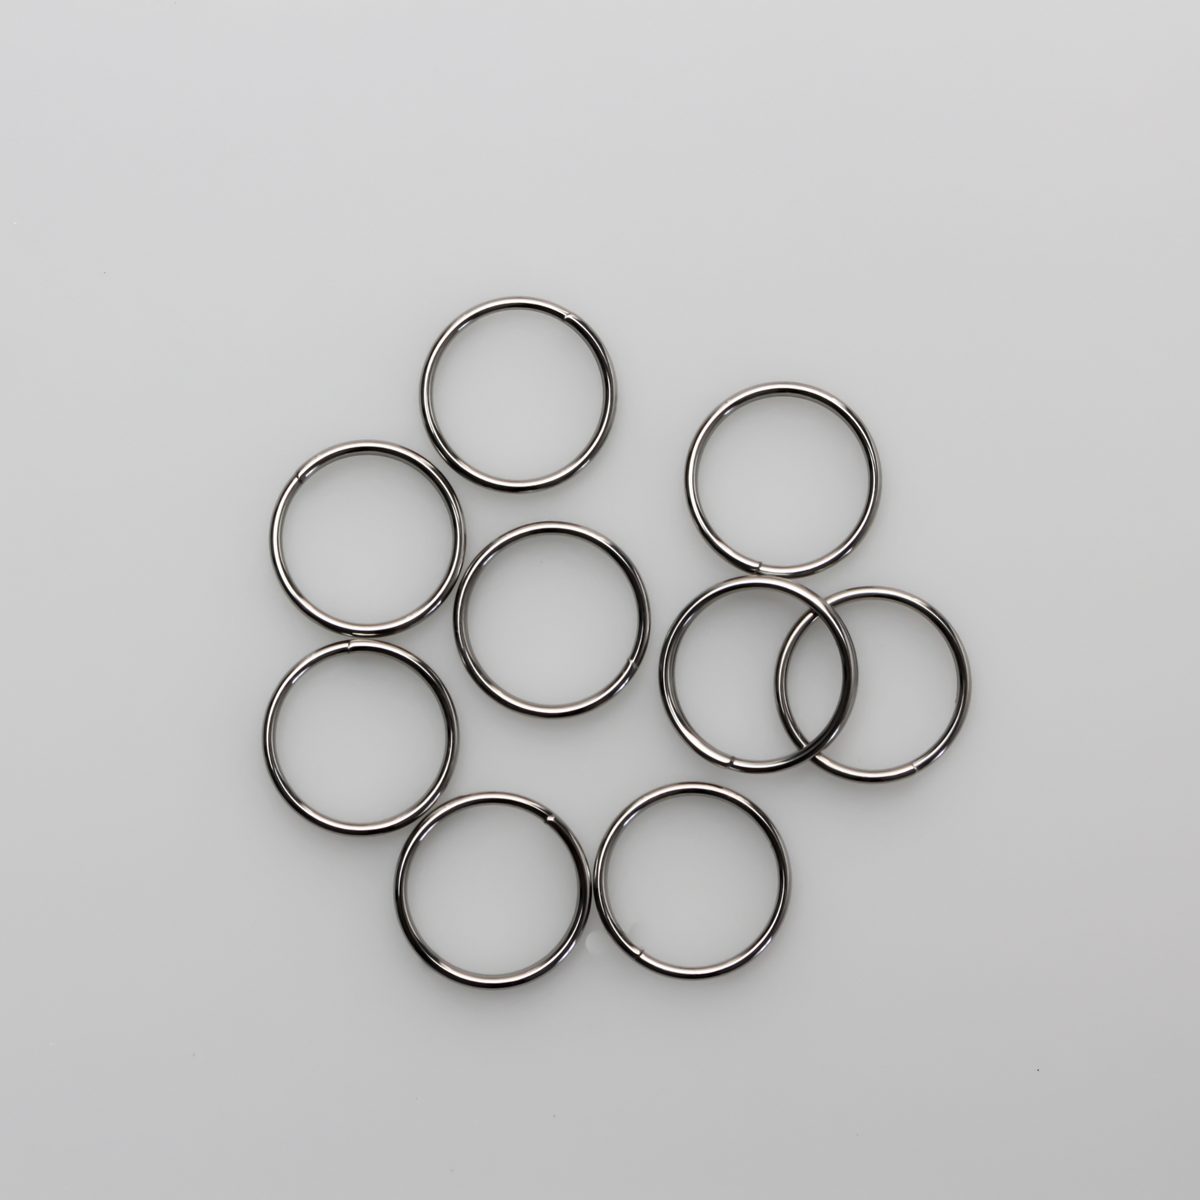 8-35mm Small - Large Keyring Split Rings Silver Metal Hoop Loop Key Ring  Keys O